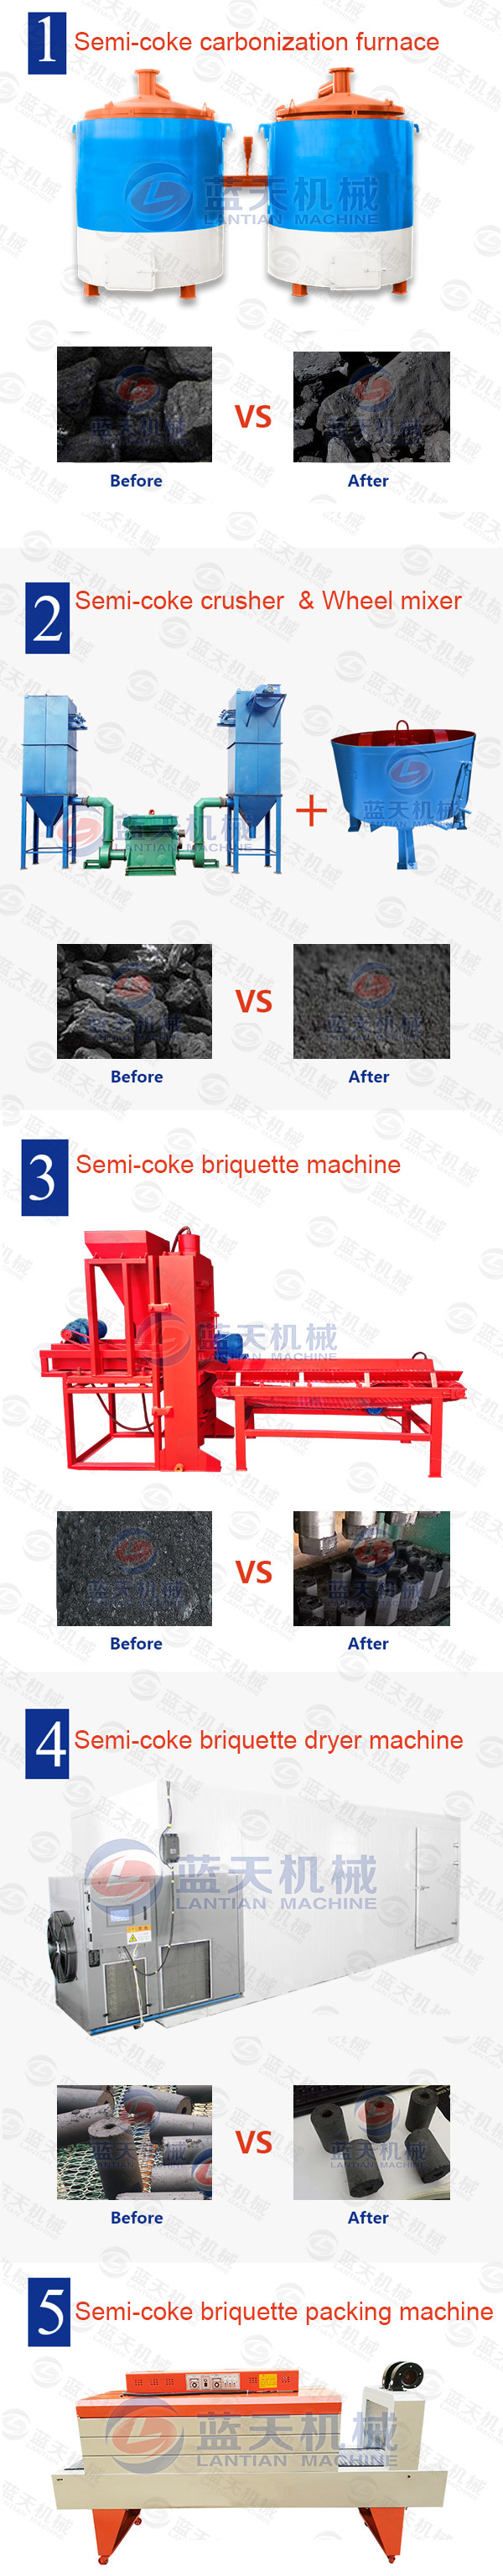 Semi-coke Briquette Machine